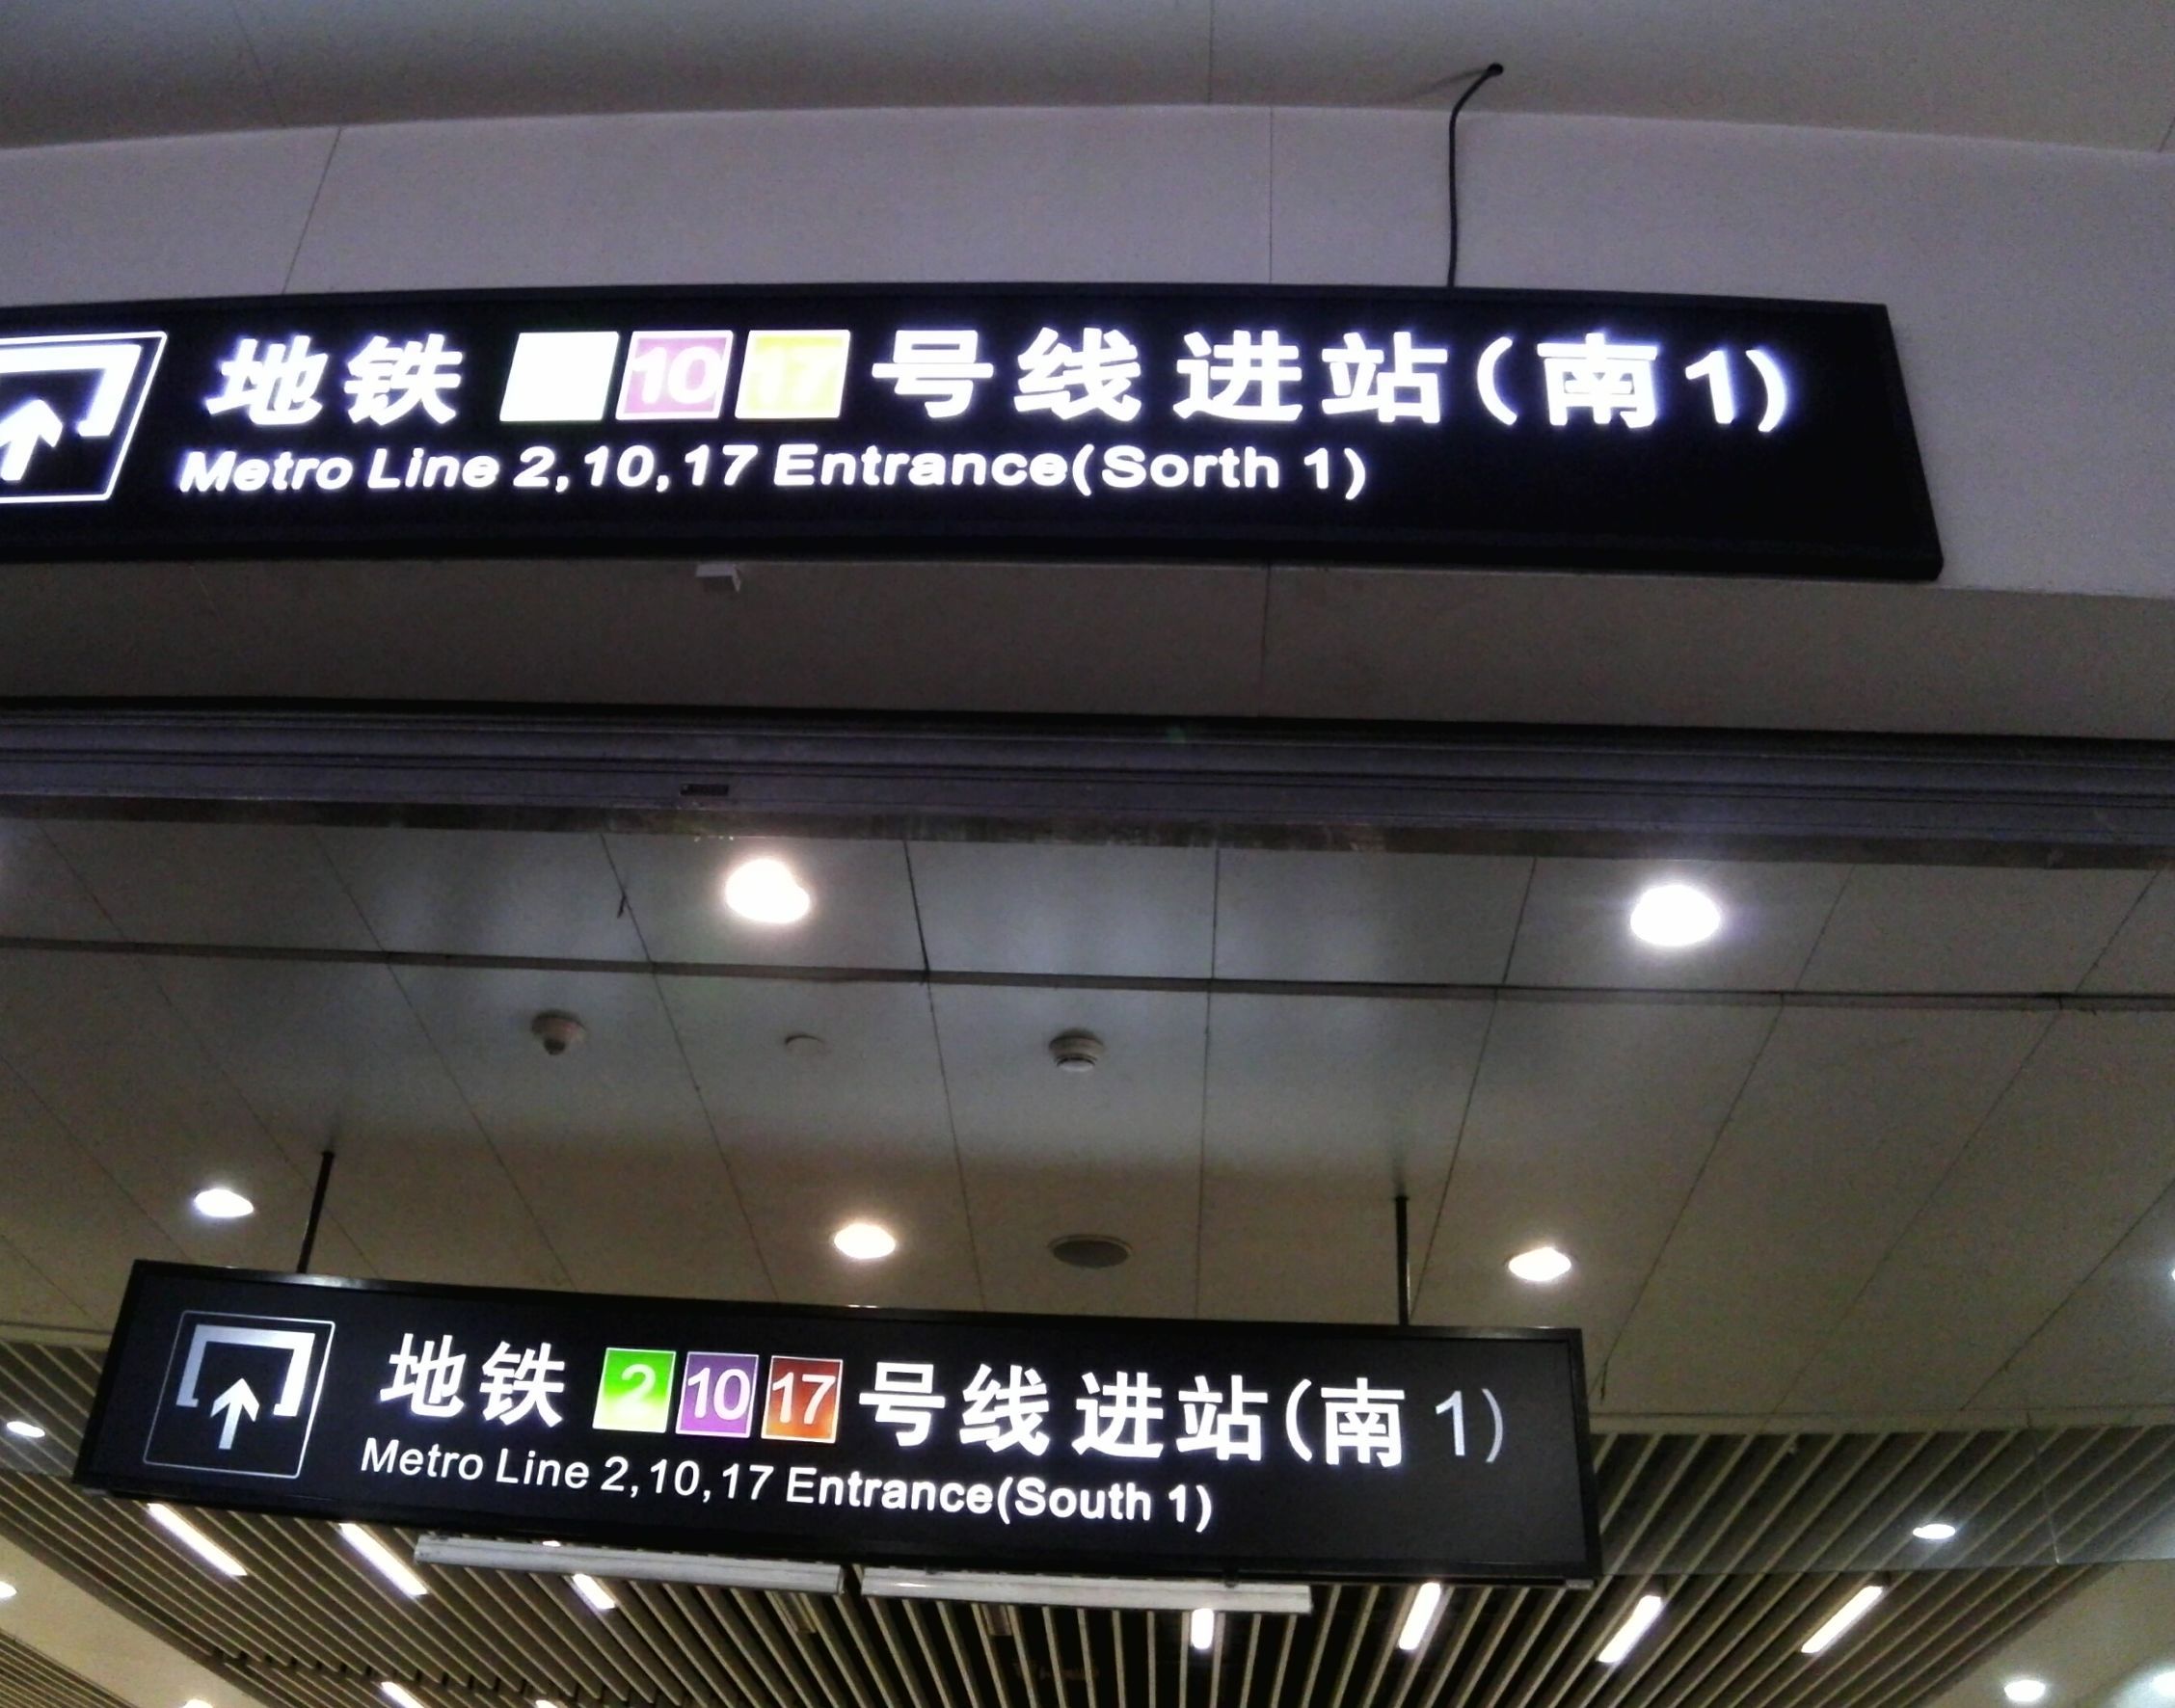 上海地铁17号线:青浦腾飞之路!